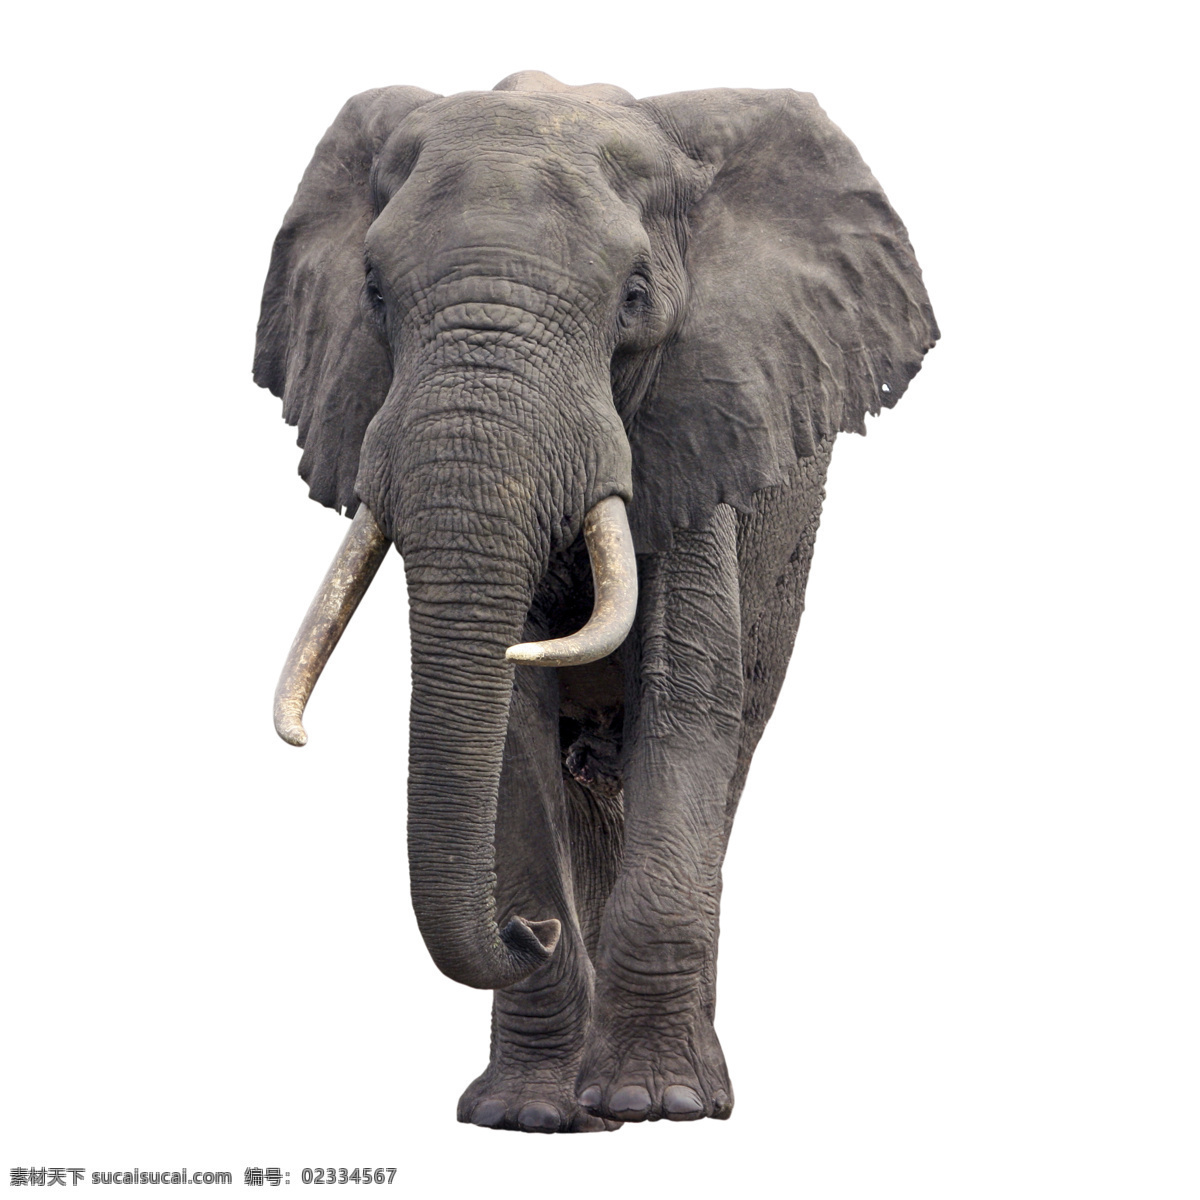 非洲大象 大象 庞然大物 庞大 象牙 象 野生动物 动物 生物世界